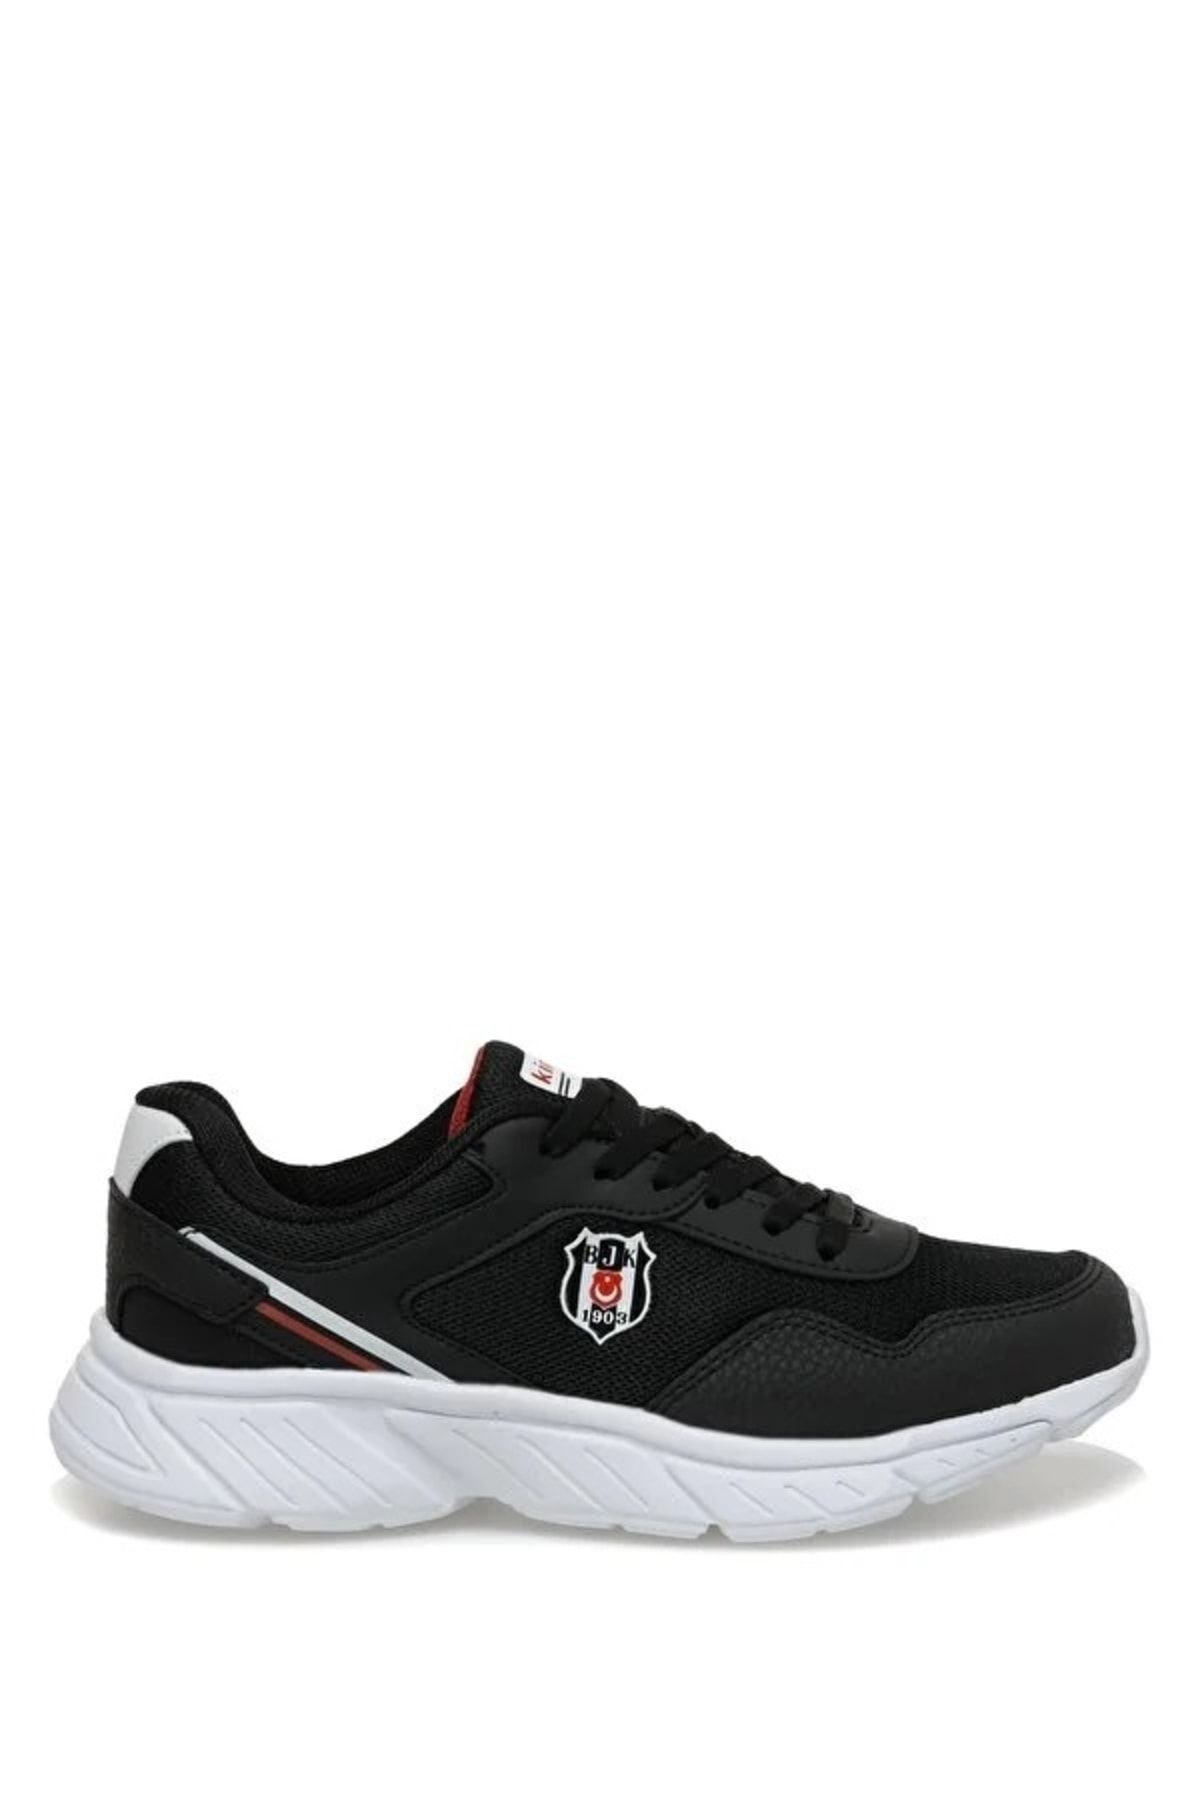 Beşiktaş Siyah Erkek Koşu Ayakkabısı